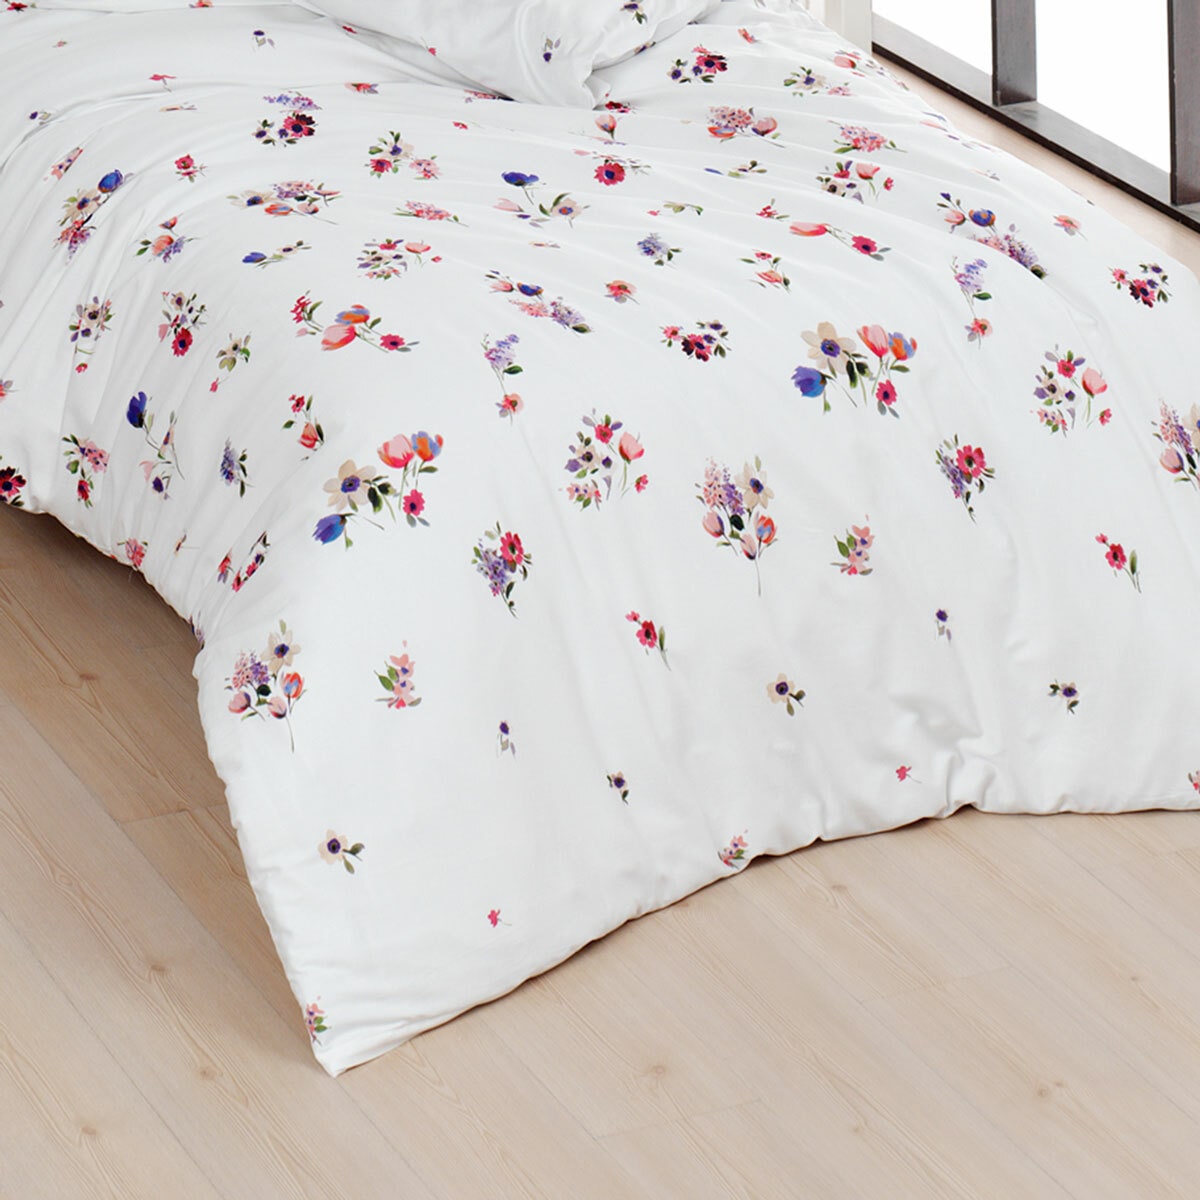 TRAUMSCHLAF Bettwäsche »Claude in Gr. 135x200, 155x220 oder 200x200 cm«, (3 tlg.), Bettwäsche aus Baumwolle, romantische Bettwäsche mit floralem Design